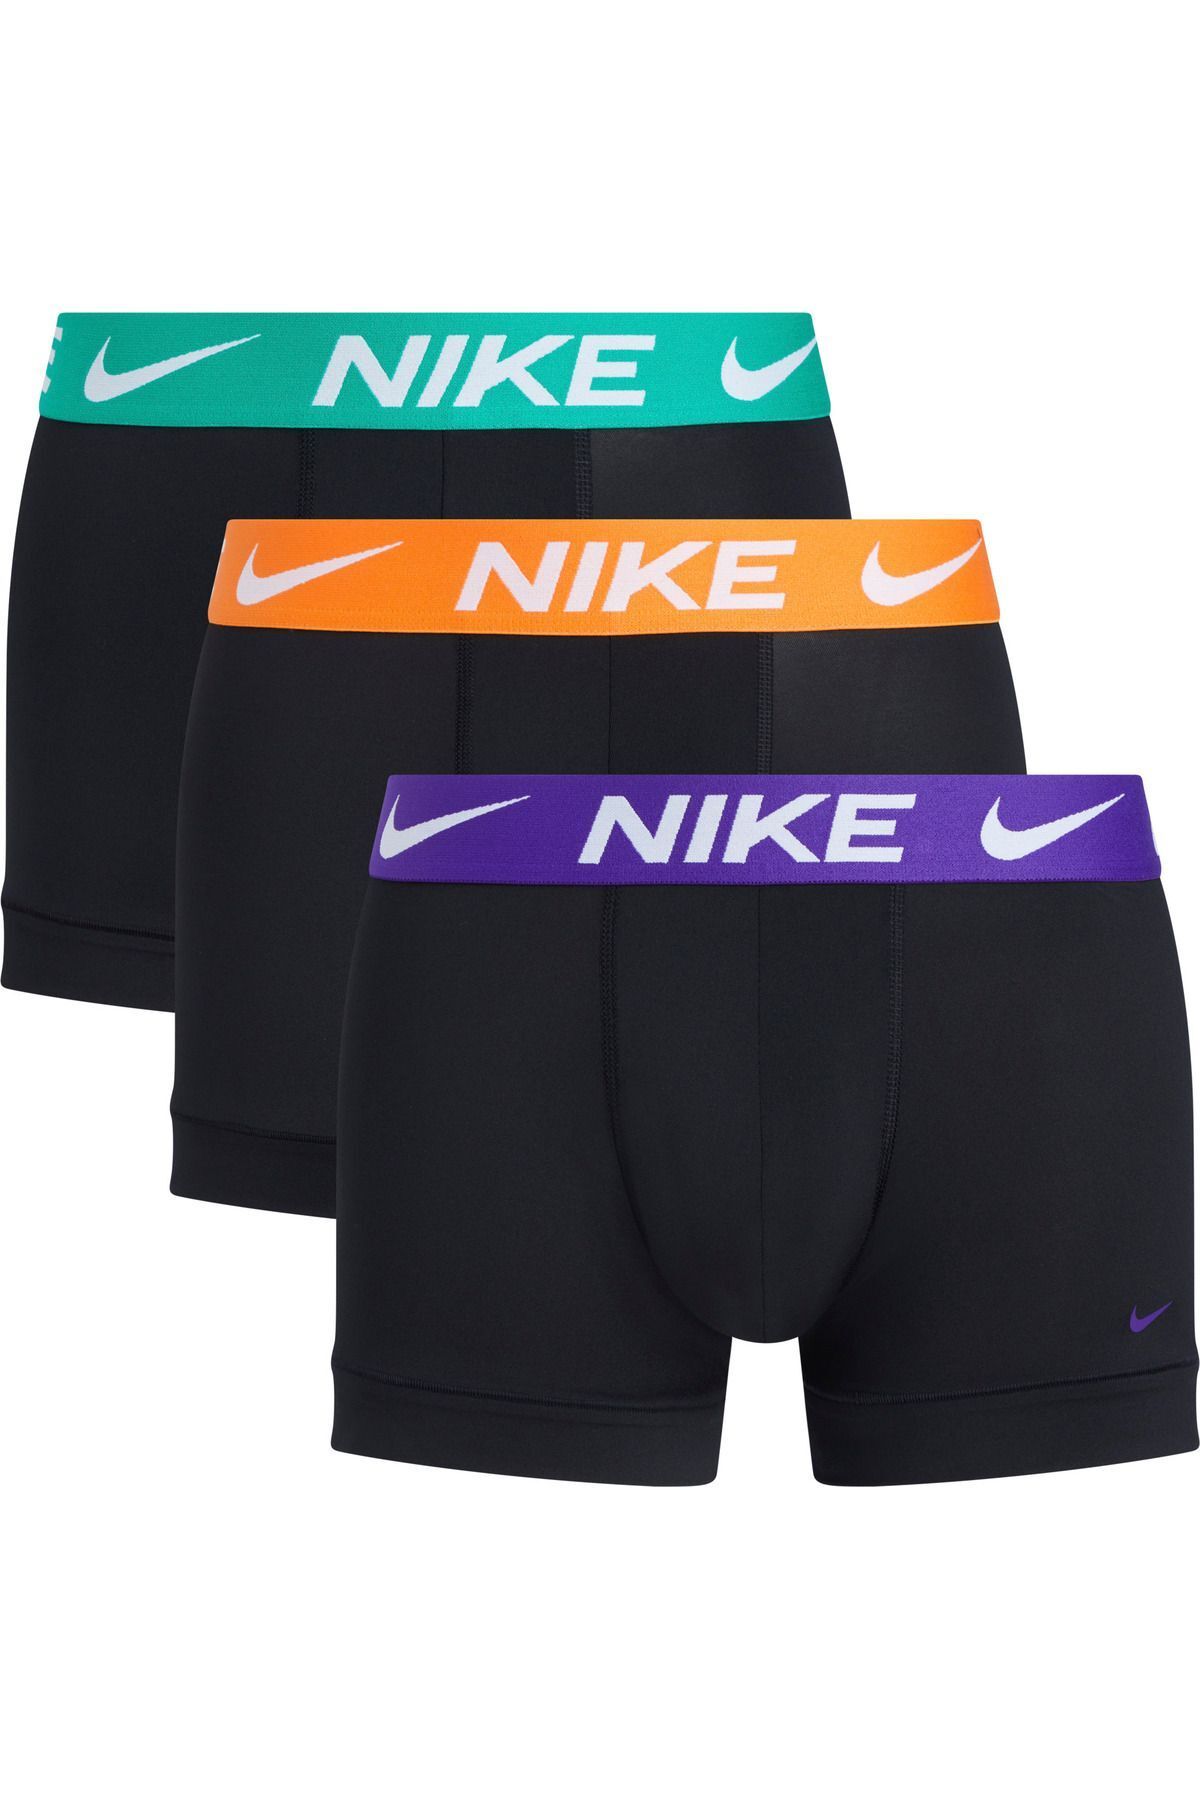 Nike Erkek Marka Logolu Elastik Bantlı Günlük Kullanıma Uygun Siyah- Boxer 0000KE1156-AN6